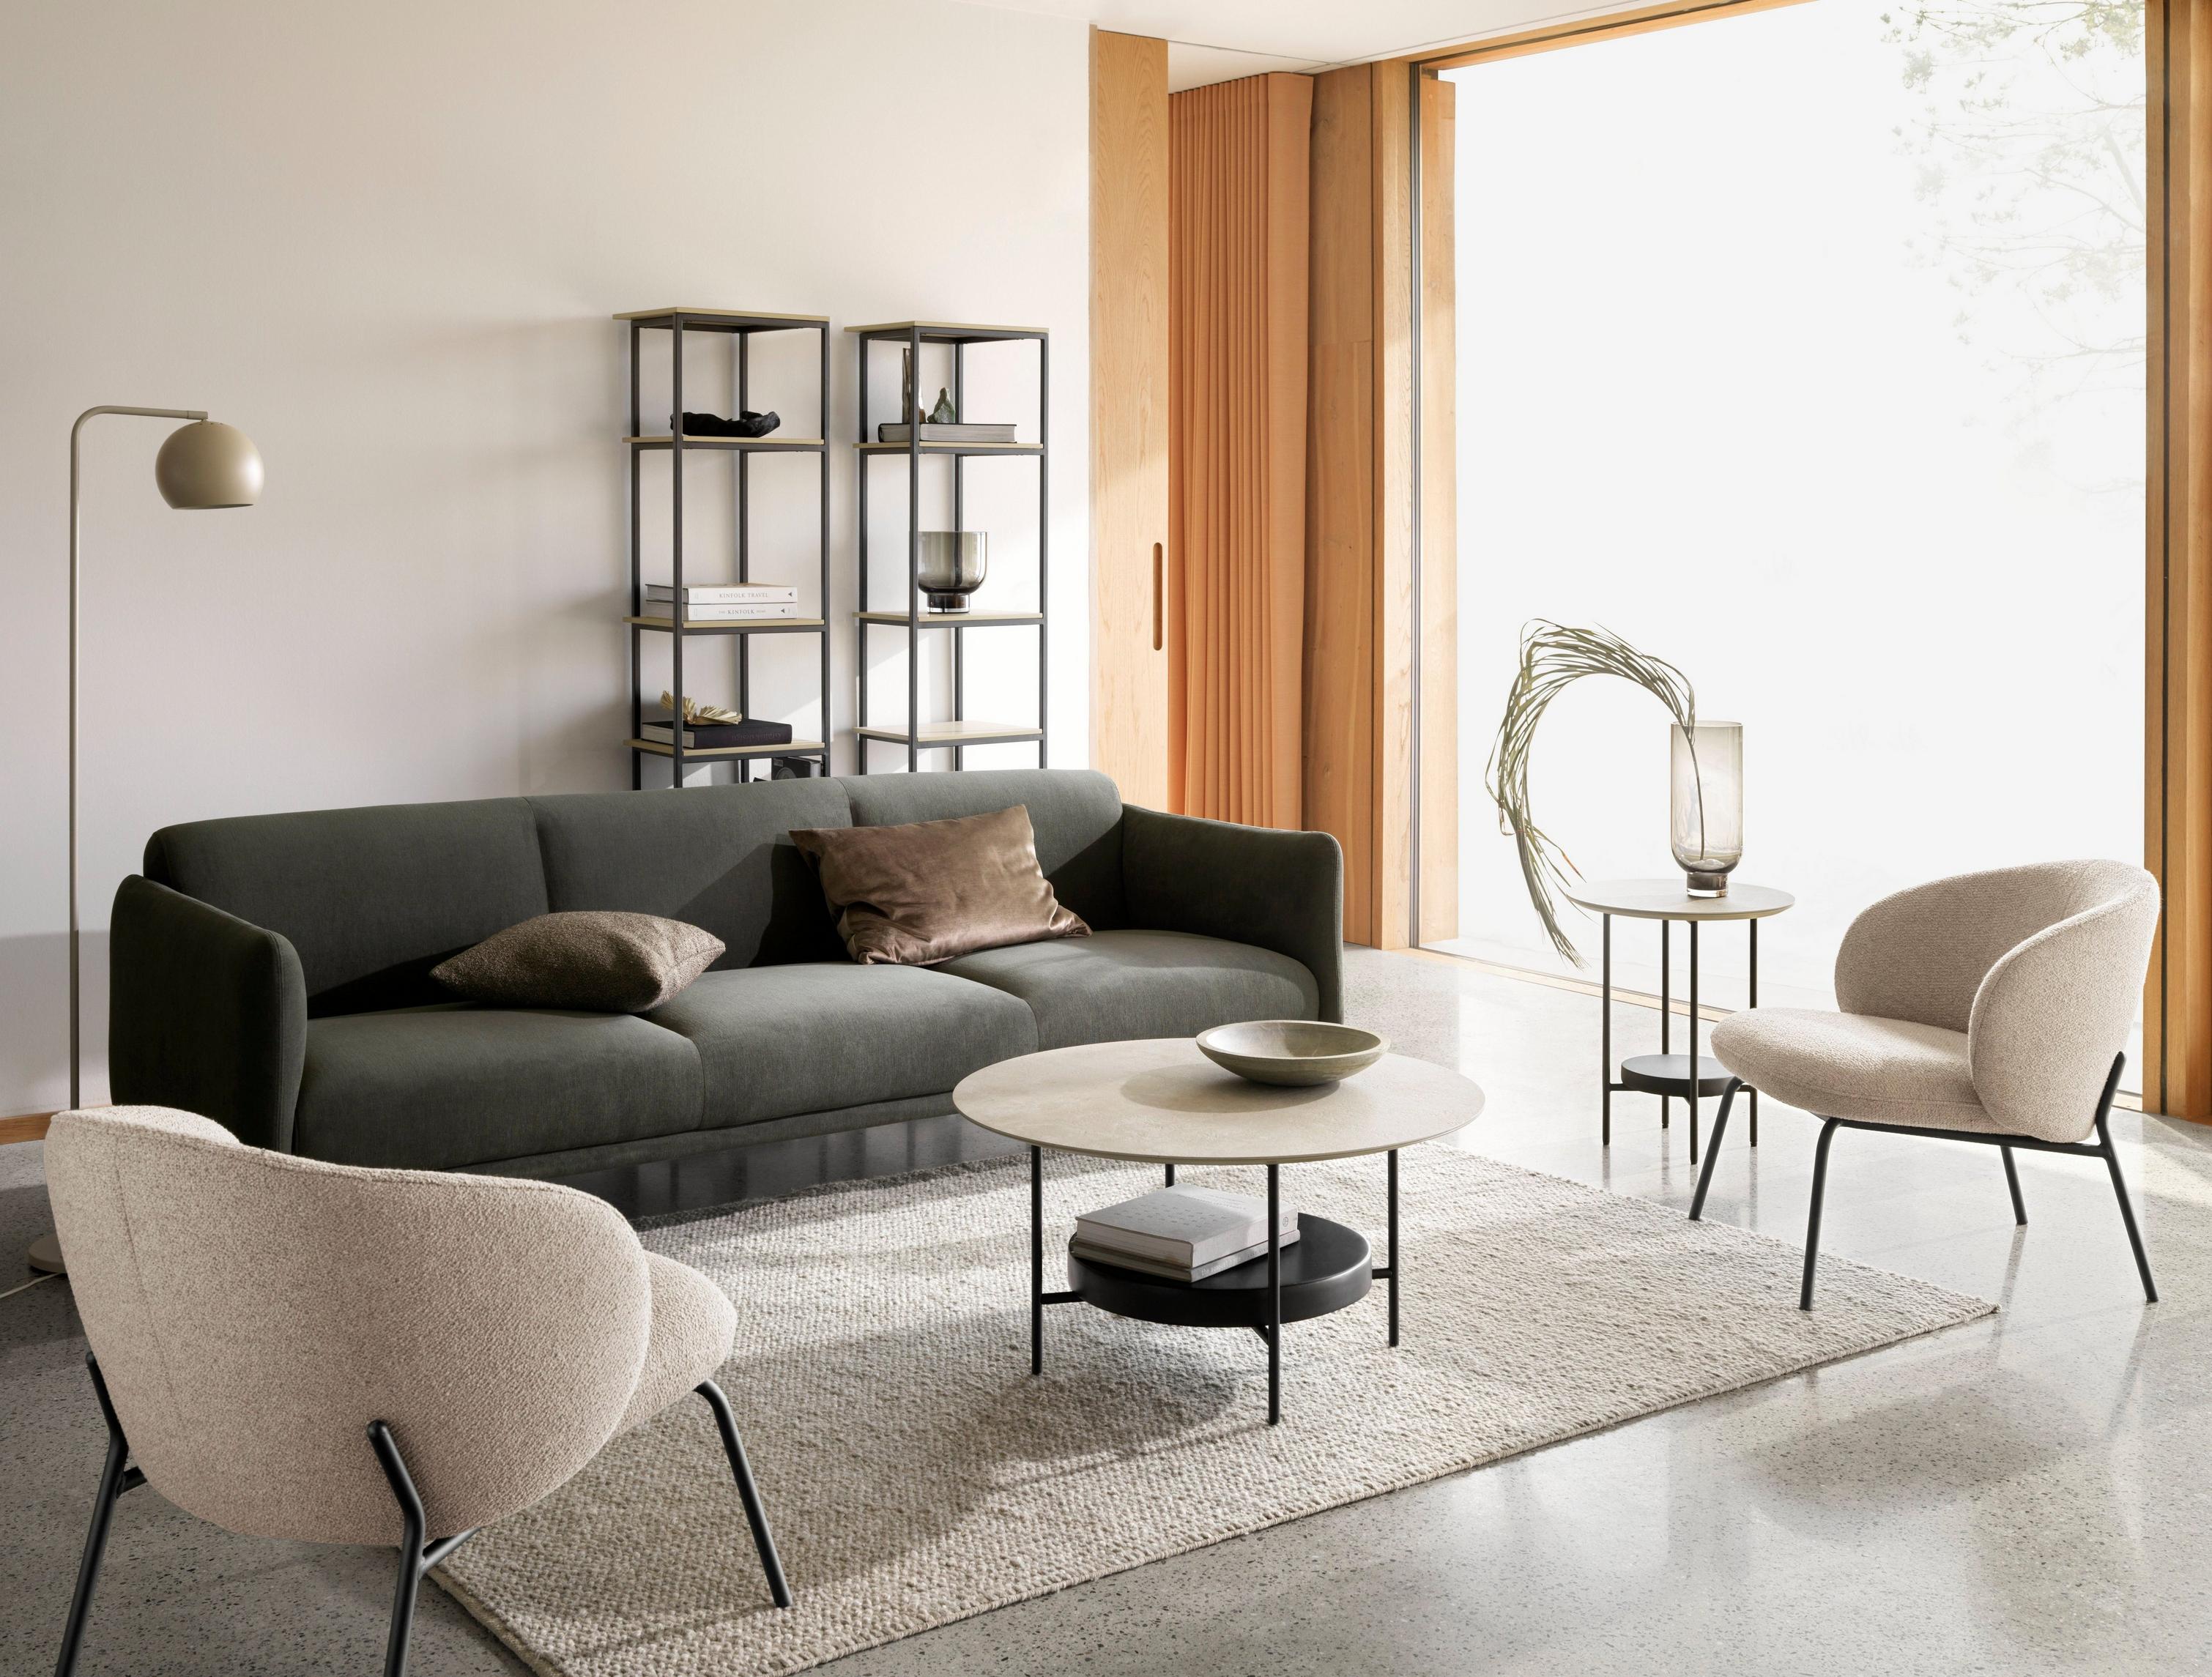 Berne 3-Sitzer-Sofa aus dunkelgrünem Frisco Stoff mit Madrid Couchtisch und Princeton Stuhl in beigefarbenem Lazio Stoff.